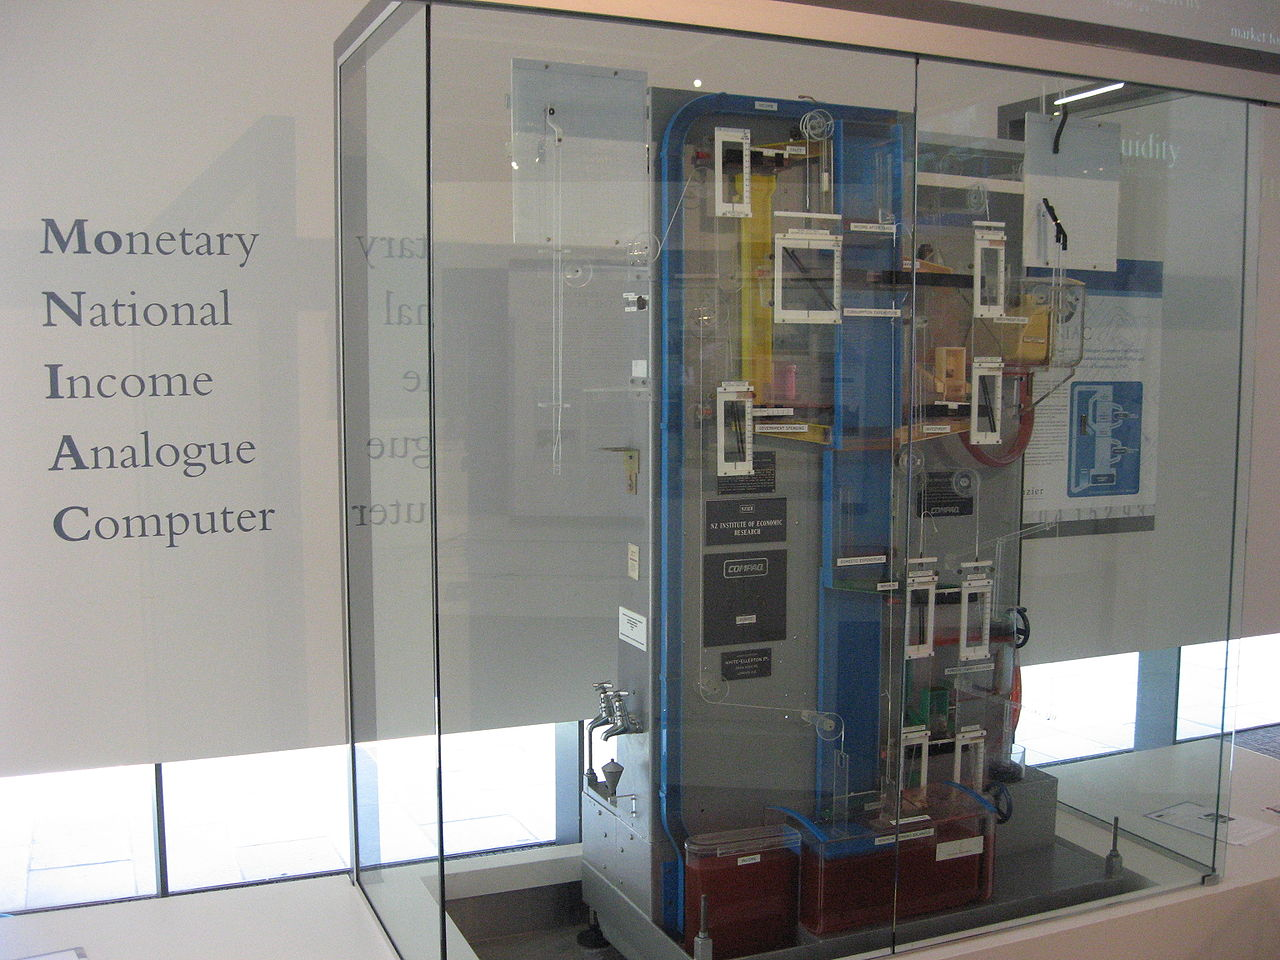 Аналоговый компьютер MONIAC использовал флюидику или &laquo;струйную логику&raquo; для моделирования процессов экономики.